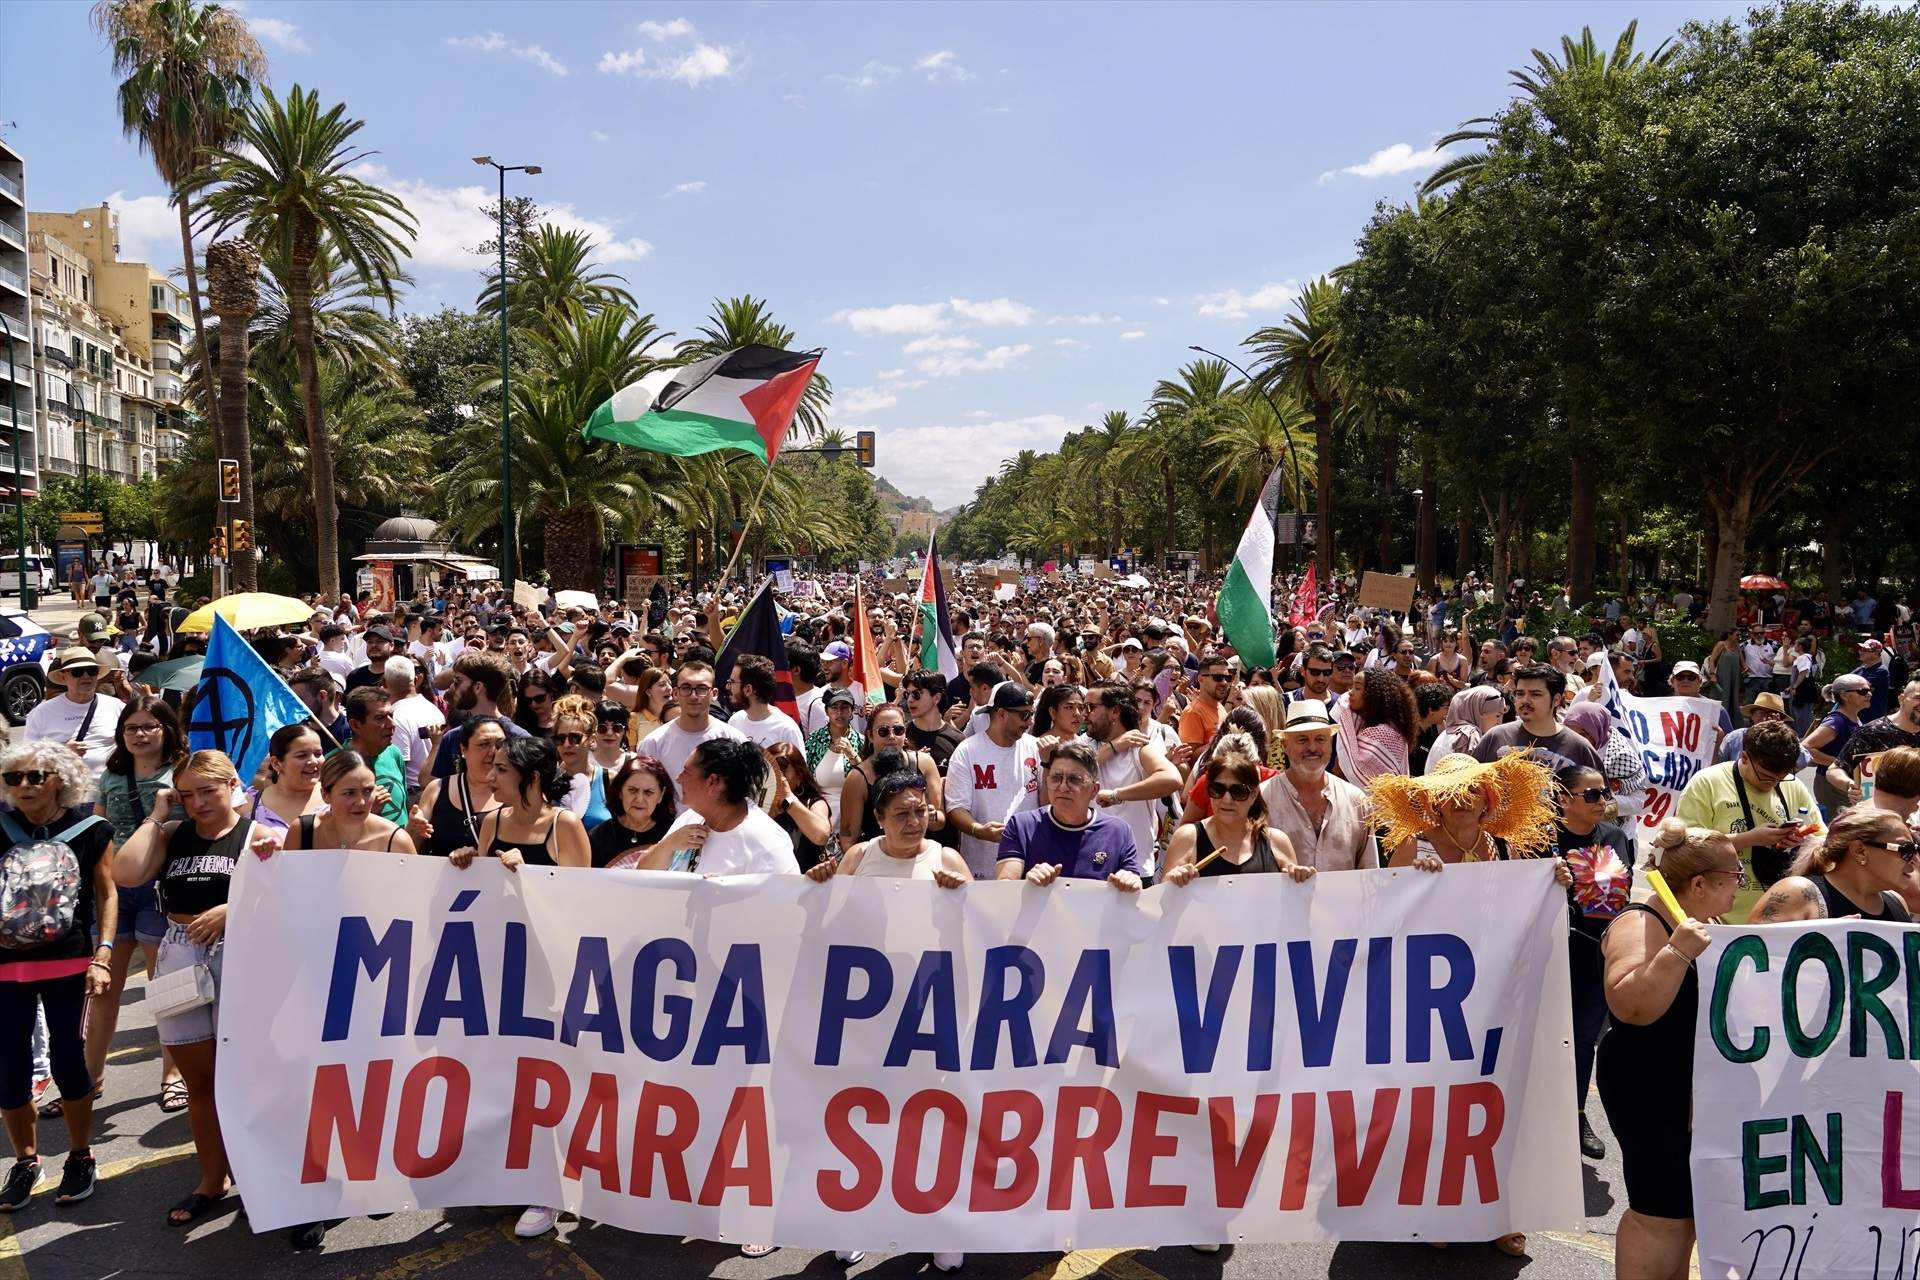 Màlaga se suma a les protestes contra el turisme de masses: "Aquesta ciutat ha dit prou"